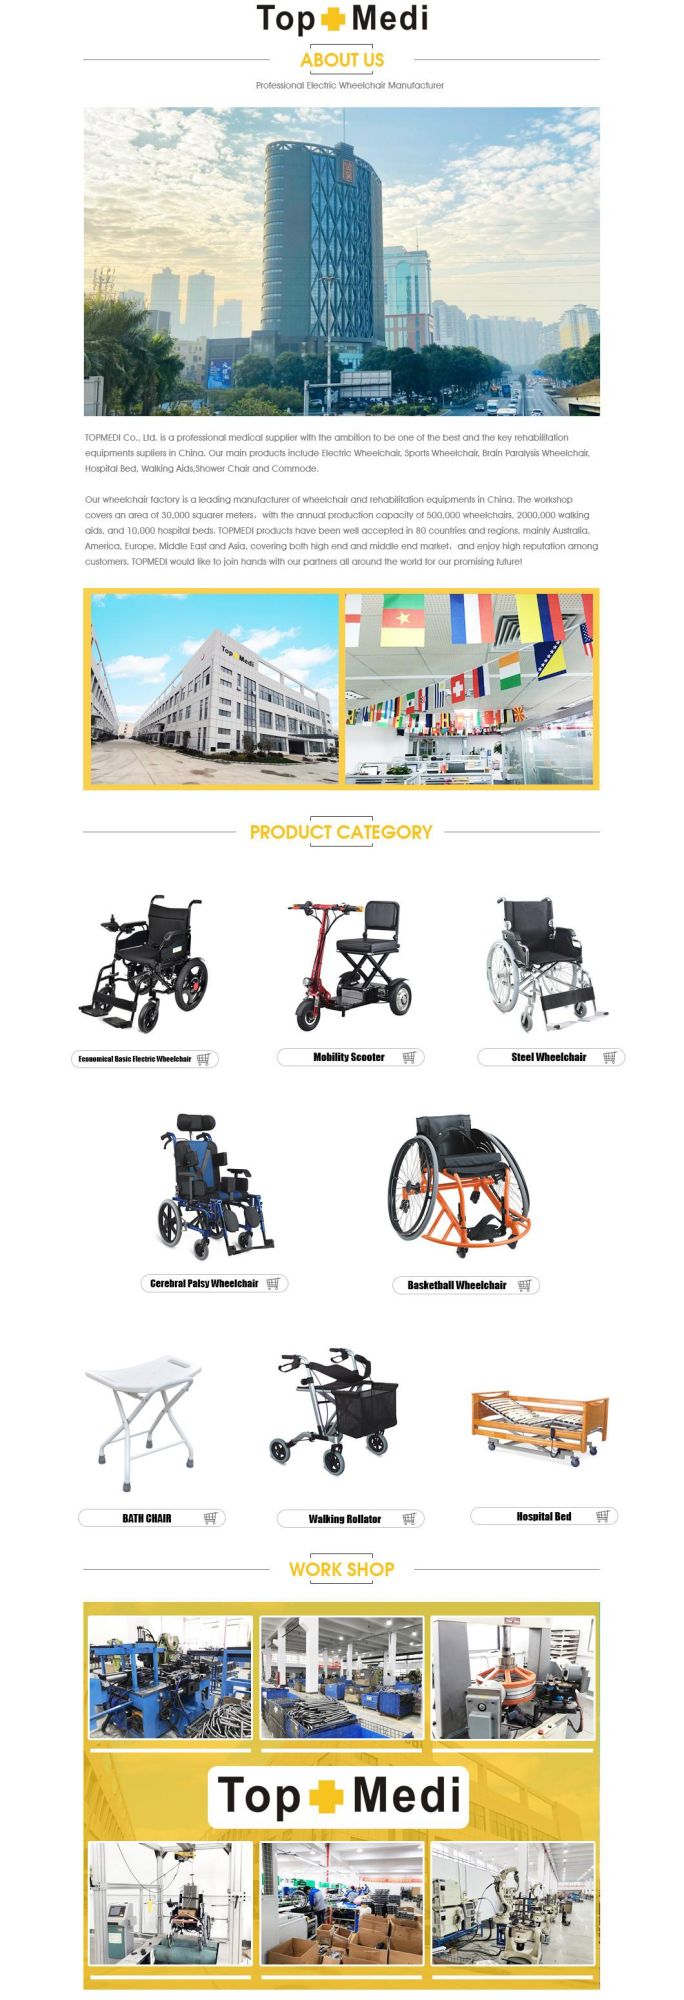 80X28X89cm, N. W. /G. W.: 17.9kg/20.4kg Electric Motor Hospital Wheelchair